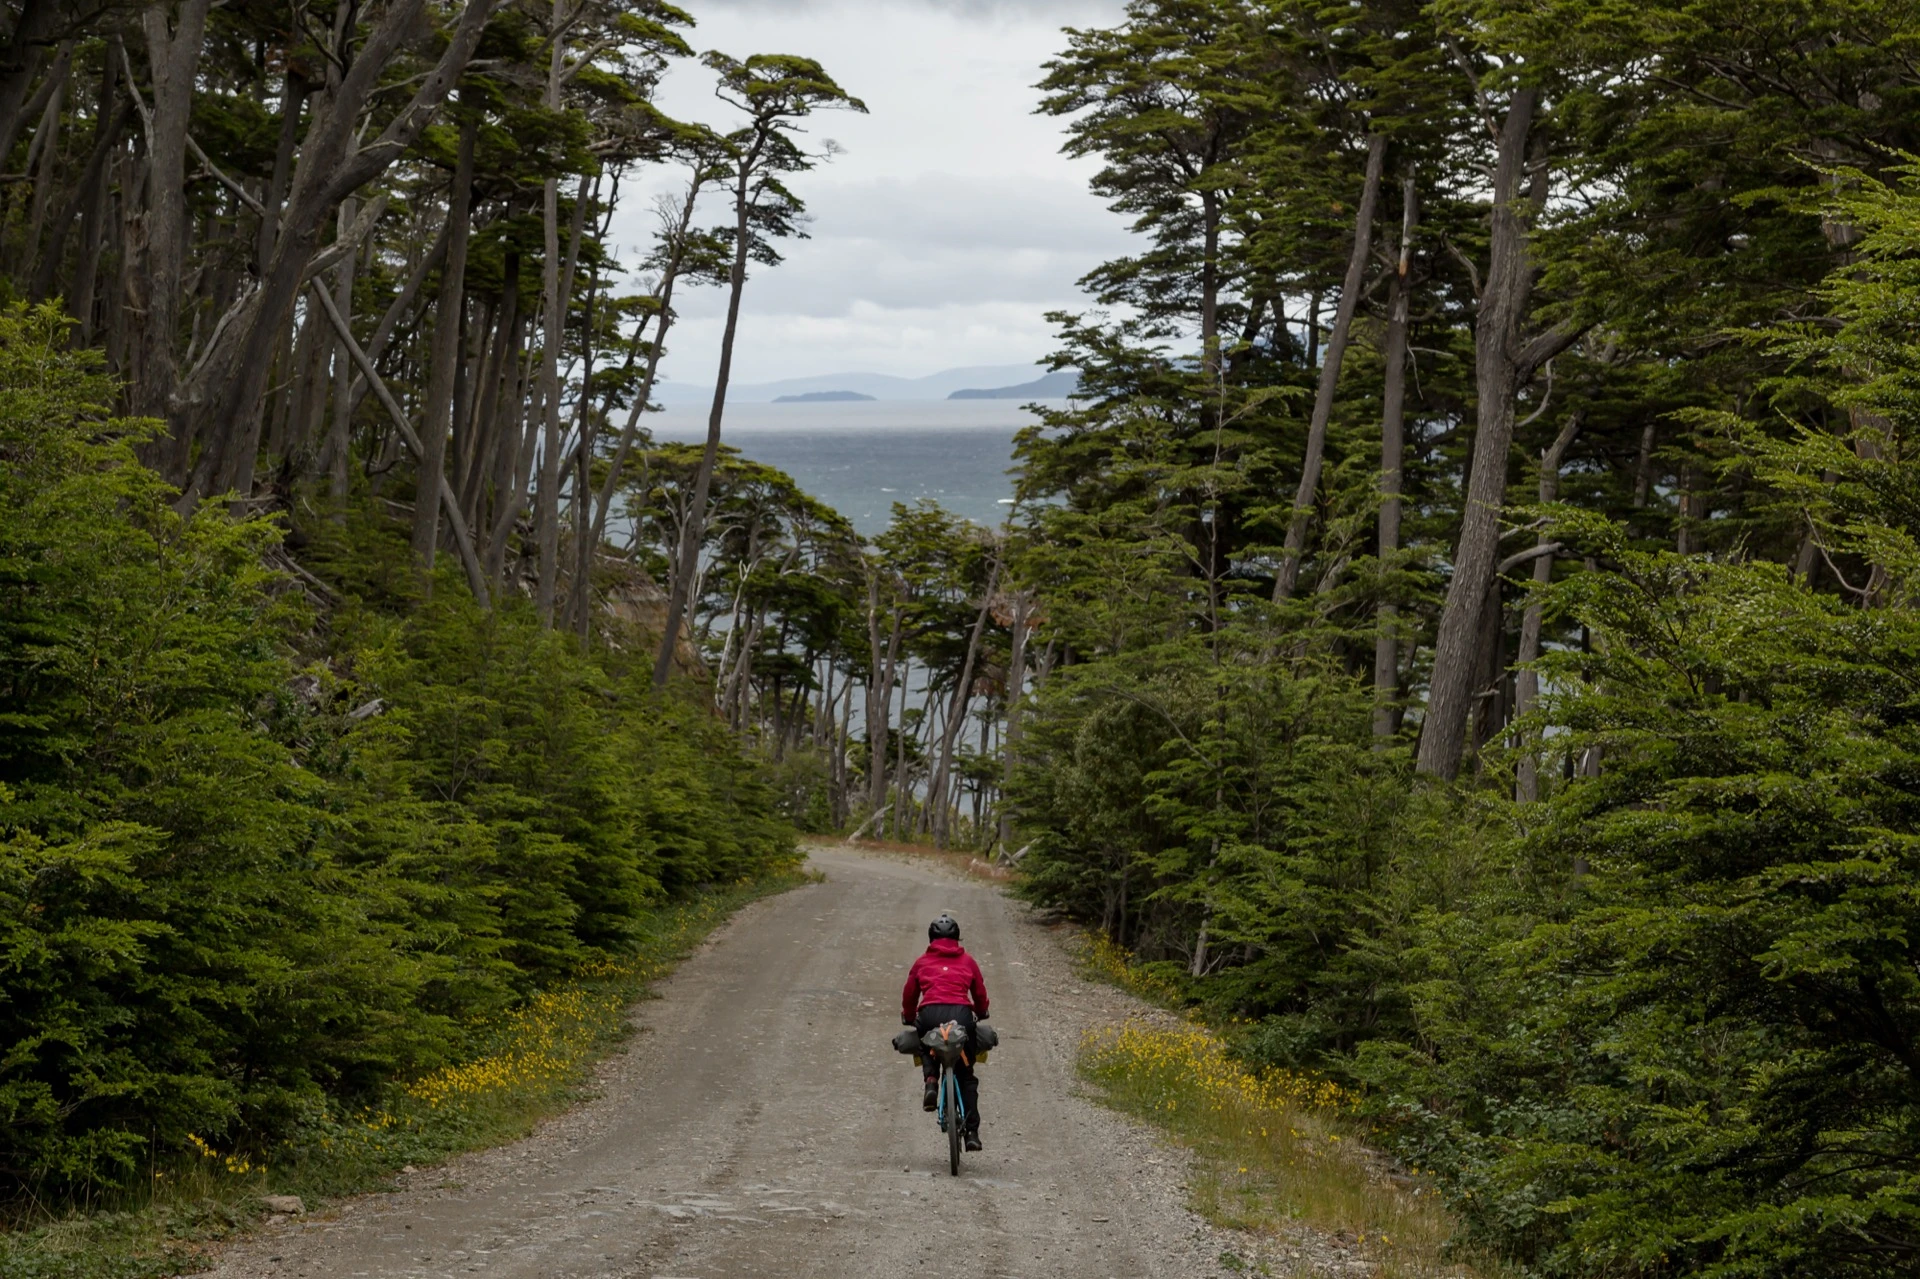 Jime Sánchez y Andrés Palla dieron la vuelta a Tierra del Fuego en bicicleta y grabaron un documental para compartir la magia de la provincia austral.